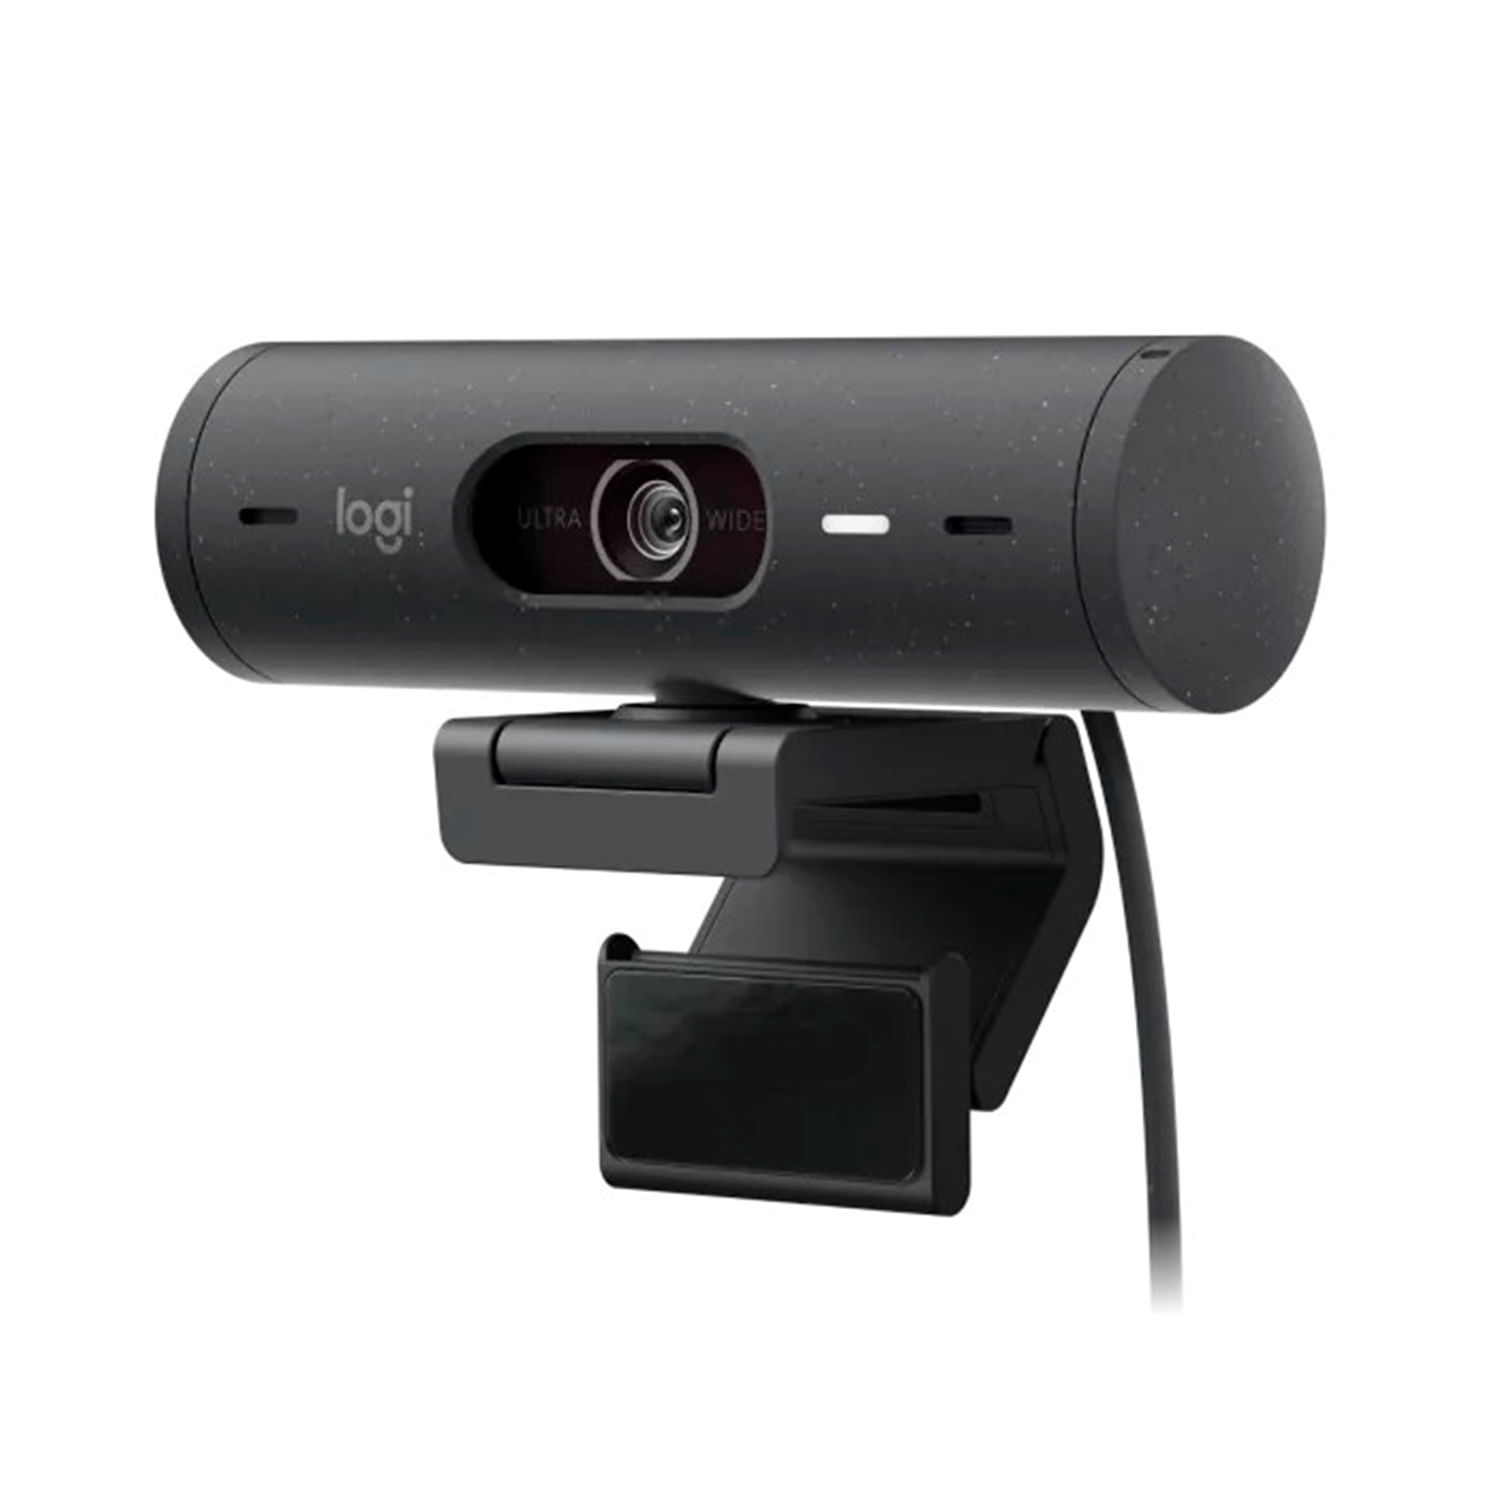 Camara Web Logitech Brio500 Full HD 1080p Correc-iluminación-encuadre automático-Show Mode